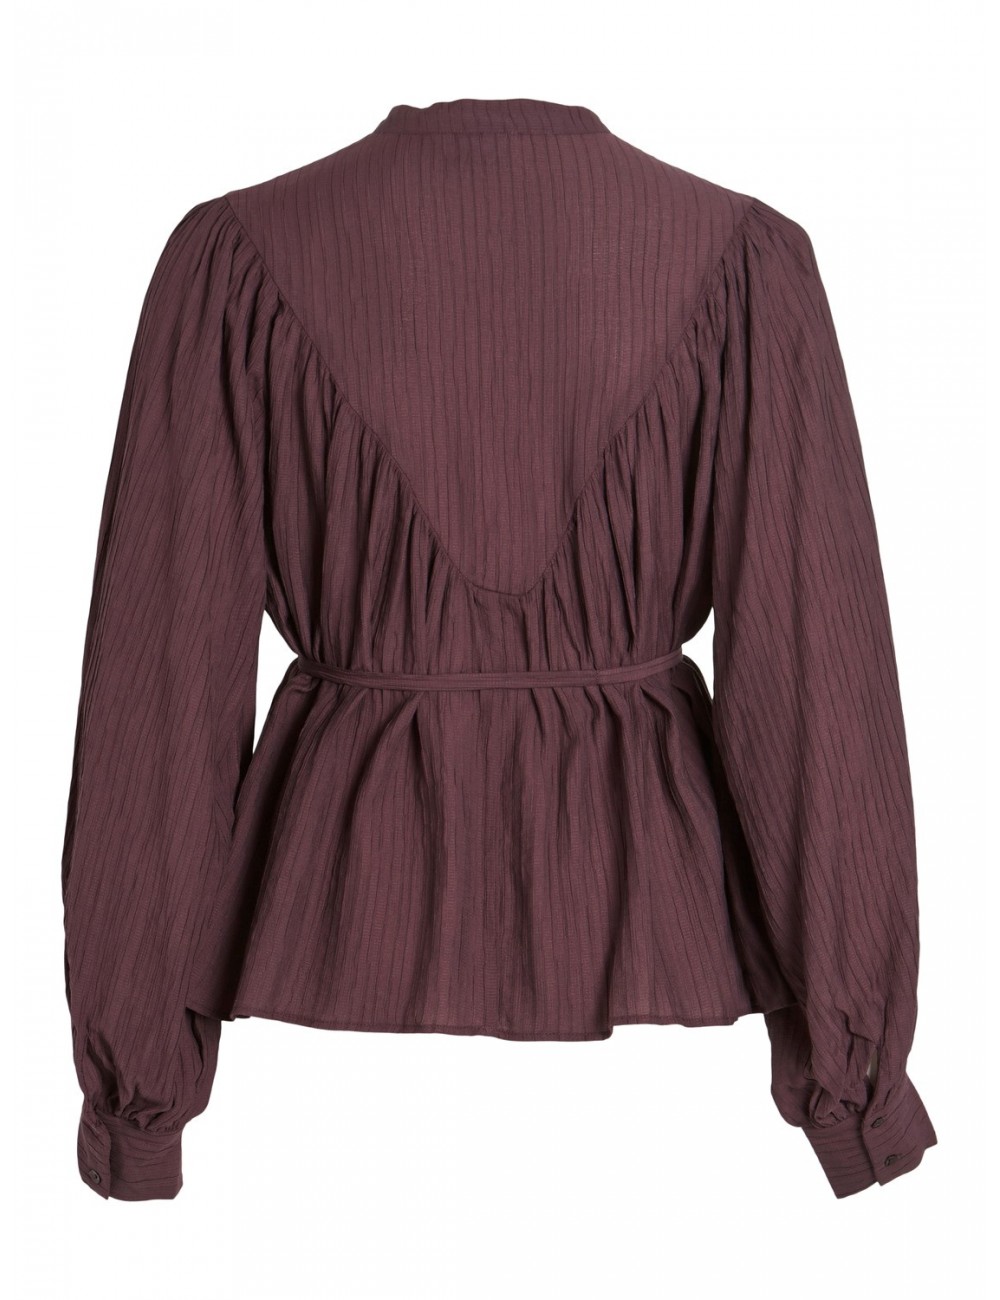 Blusa Florencine premium de Vila Rouge en color morado.